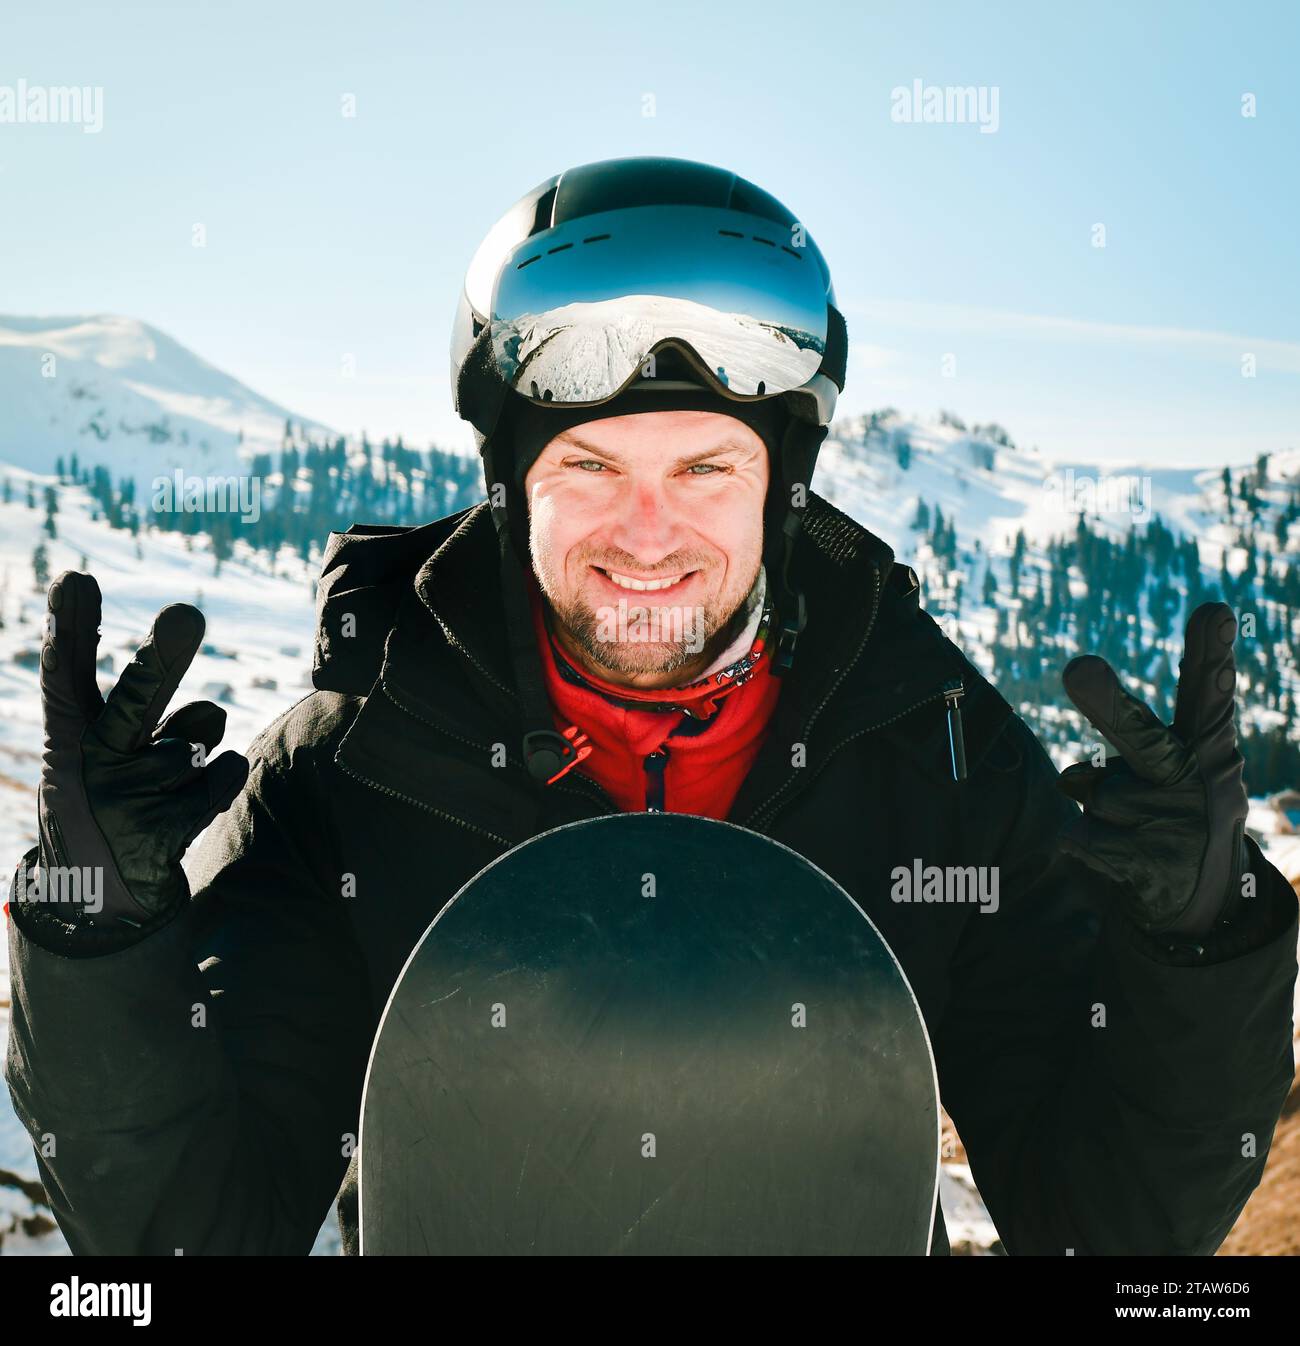 Hombre de snowboarder caucásico con gafas de esquí y equipo de esquí de colores, mostrando los pulgares hacia arriba en la pendiente Foto de stock